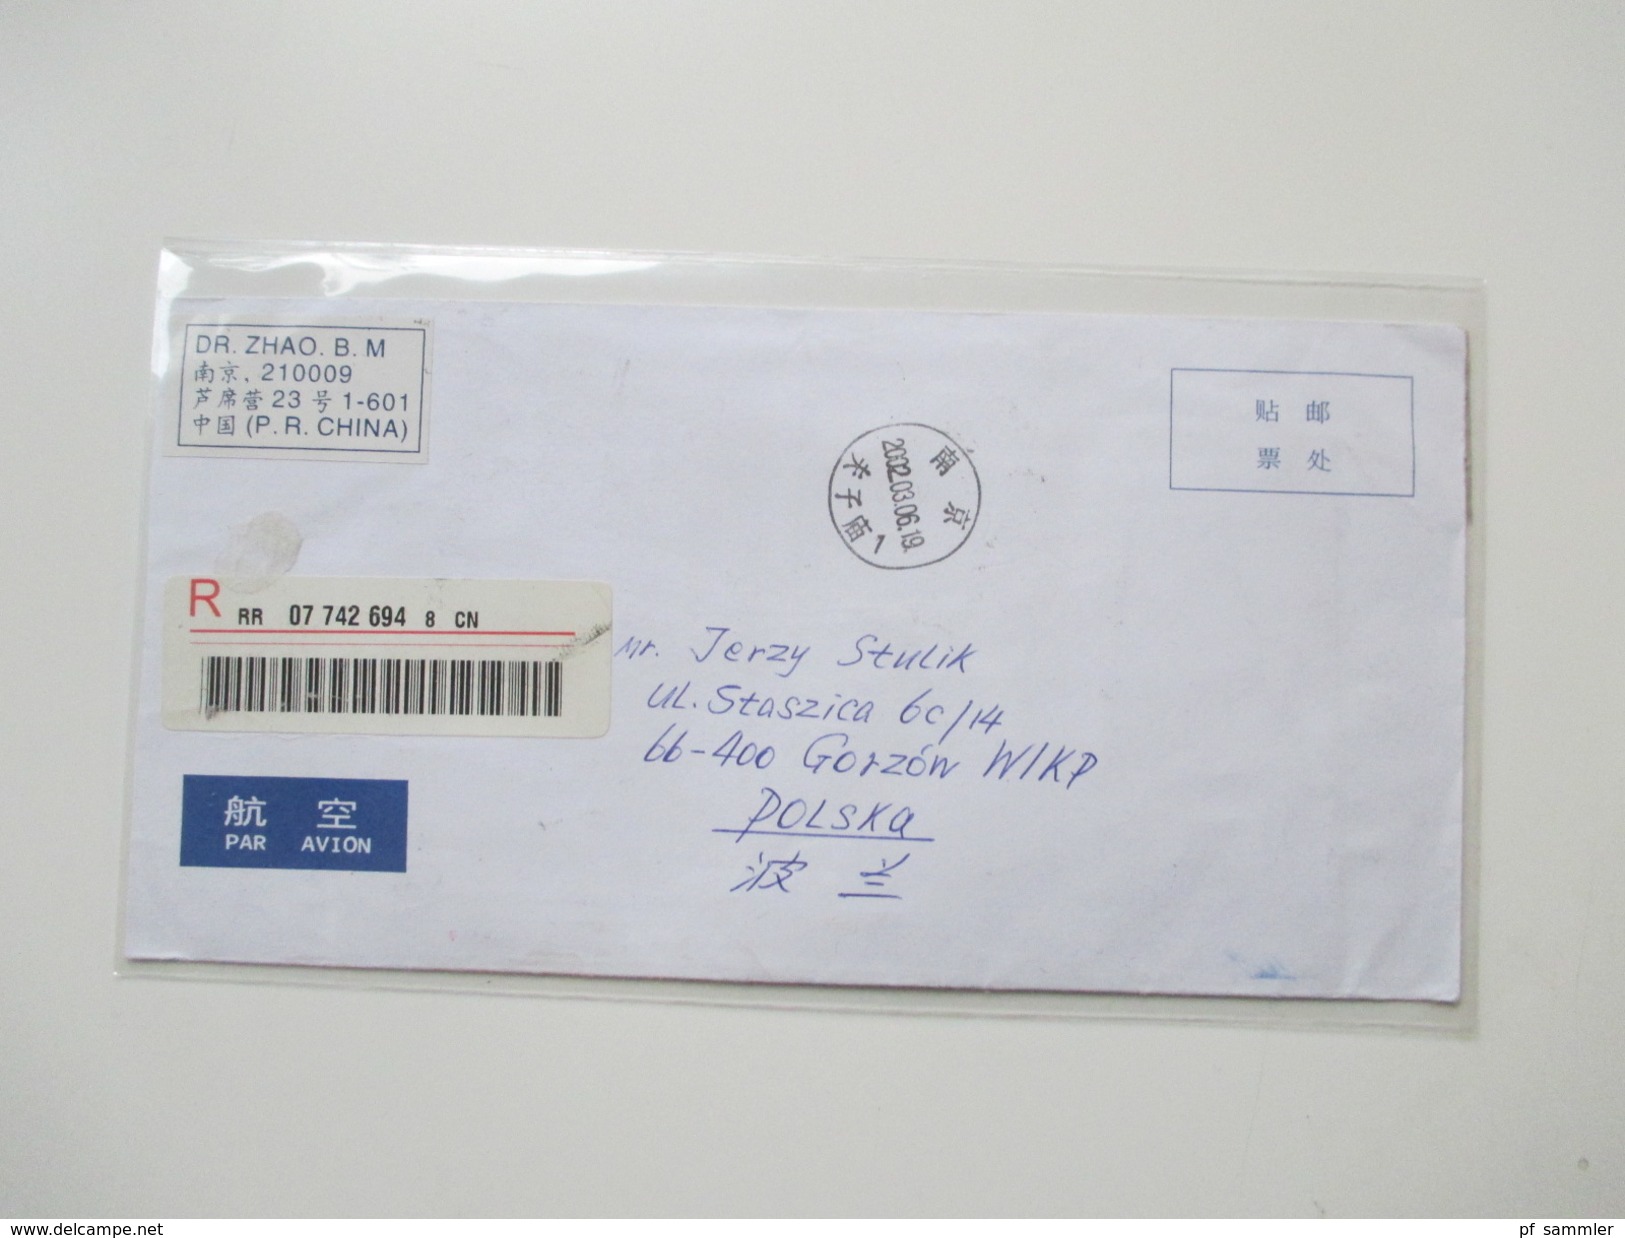 VR China 1980 / 90er Jahre 24 Briefe / Ganzsachen. Rote Stempel / Zierbriefe / FDC echt gelaufen nach Polen usw...